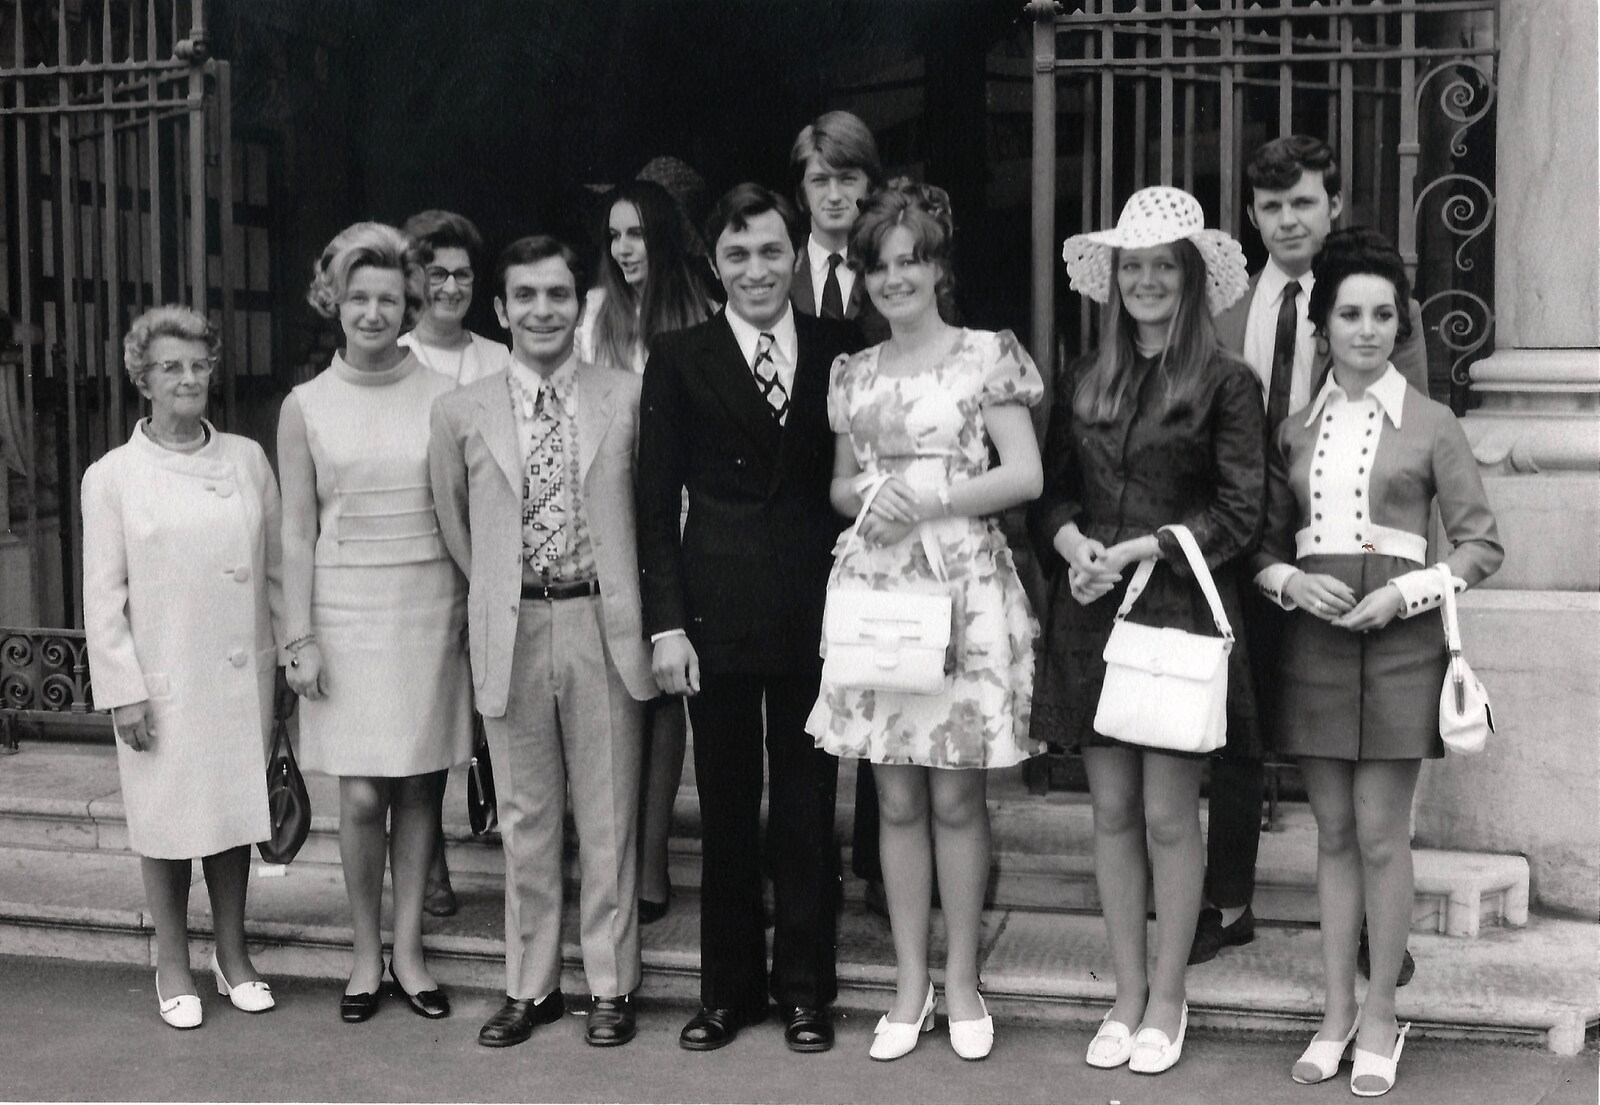 Family History: The 1960s - 24th January 2020: Family at Judith's wedding